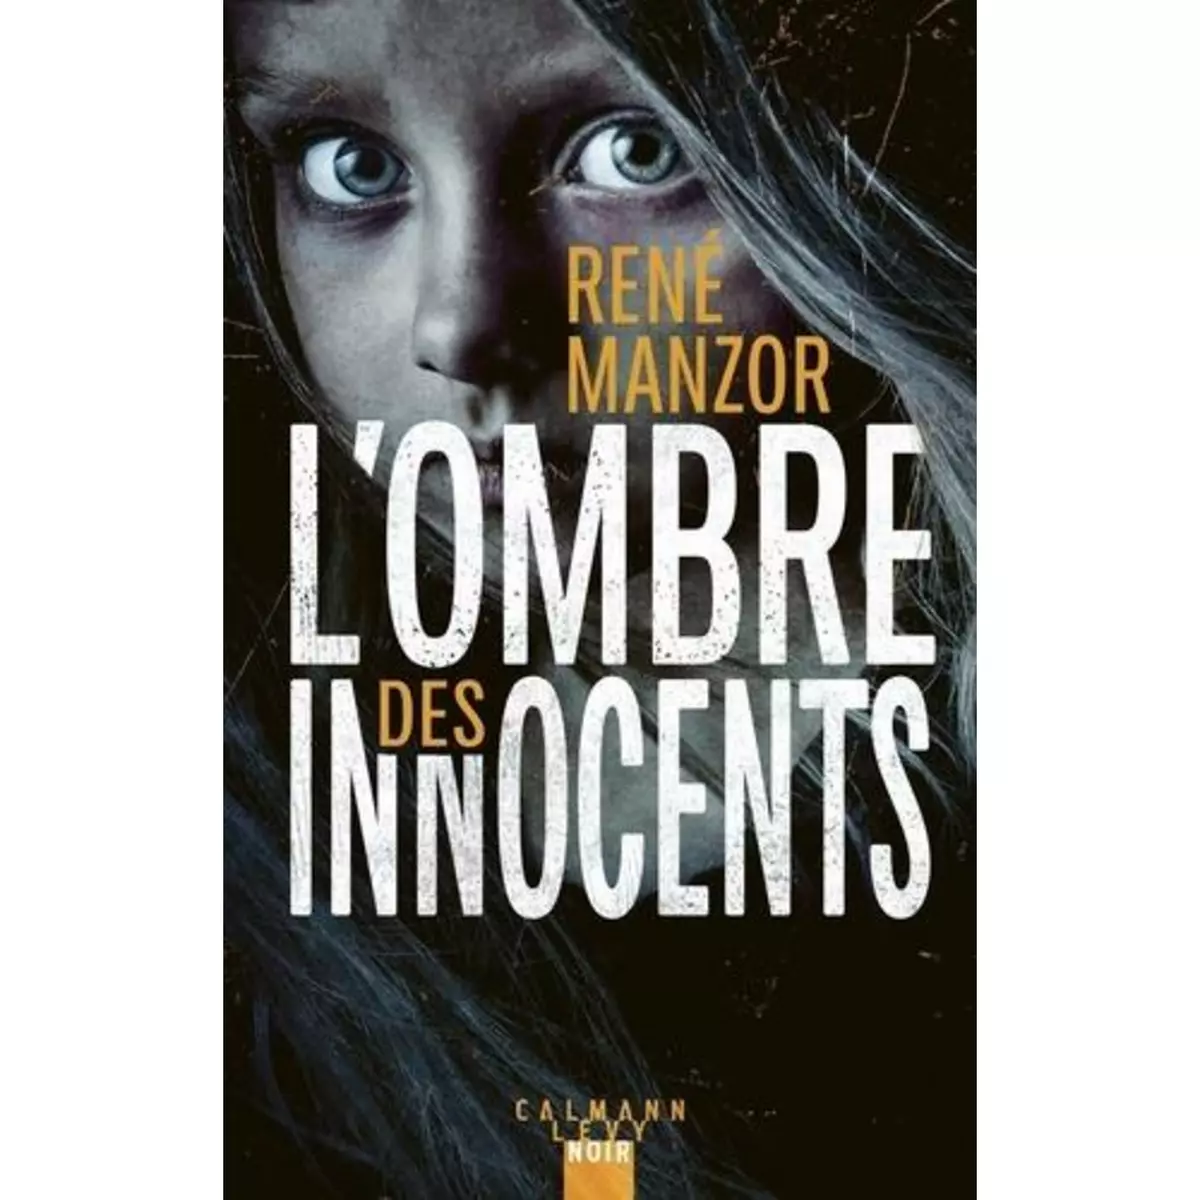  L'OMBRE DES INNOCENTS, Manzor René